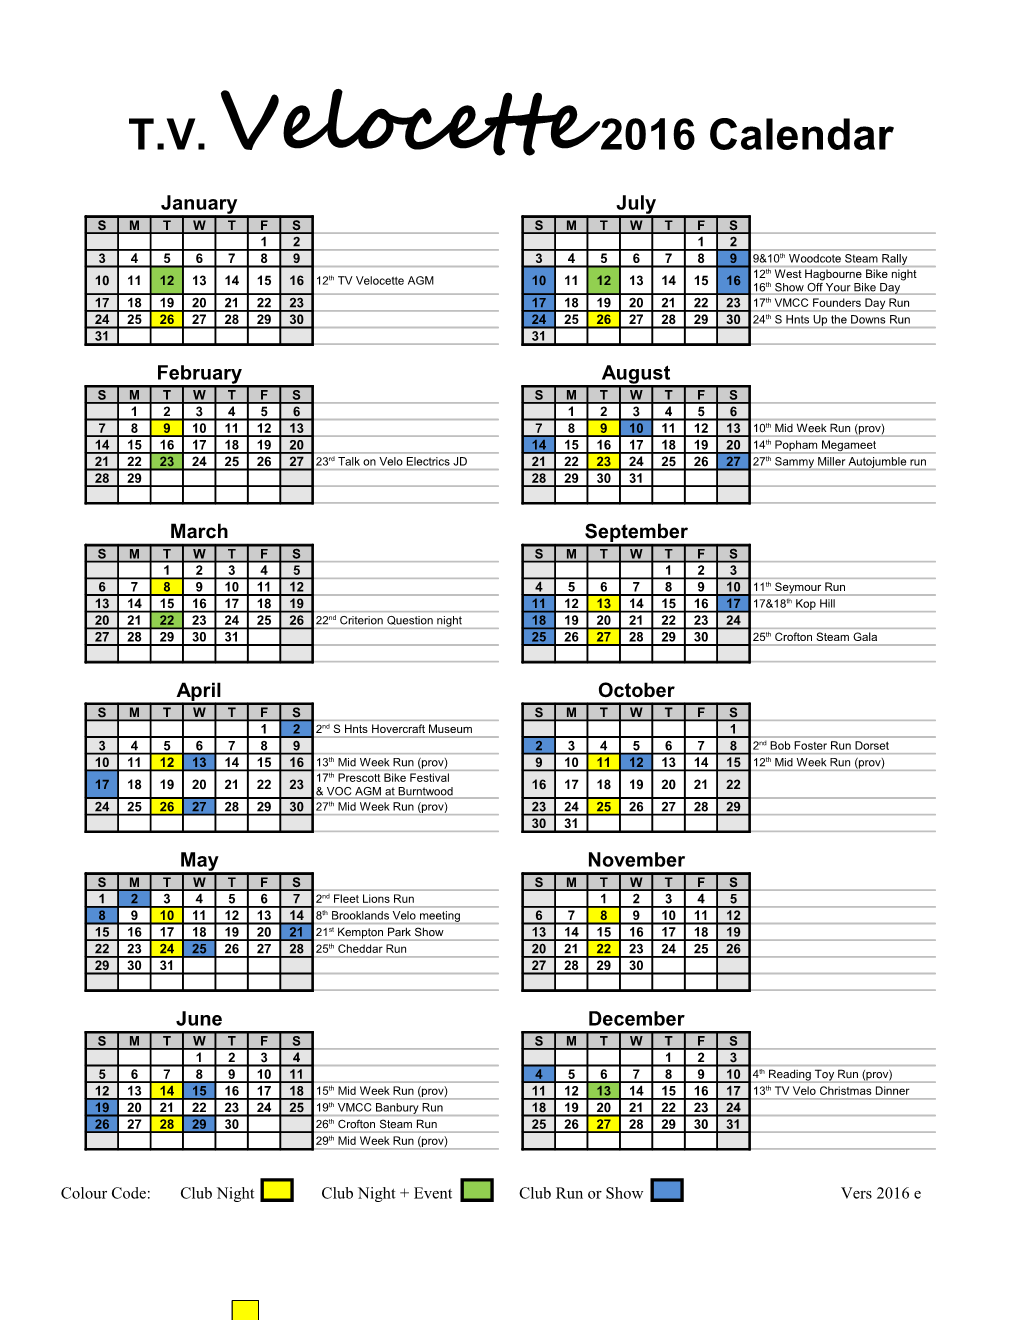 T.V. Velocette 2016 Calendar